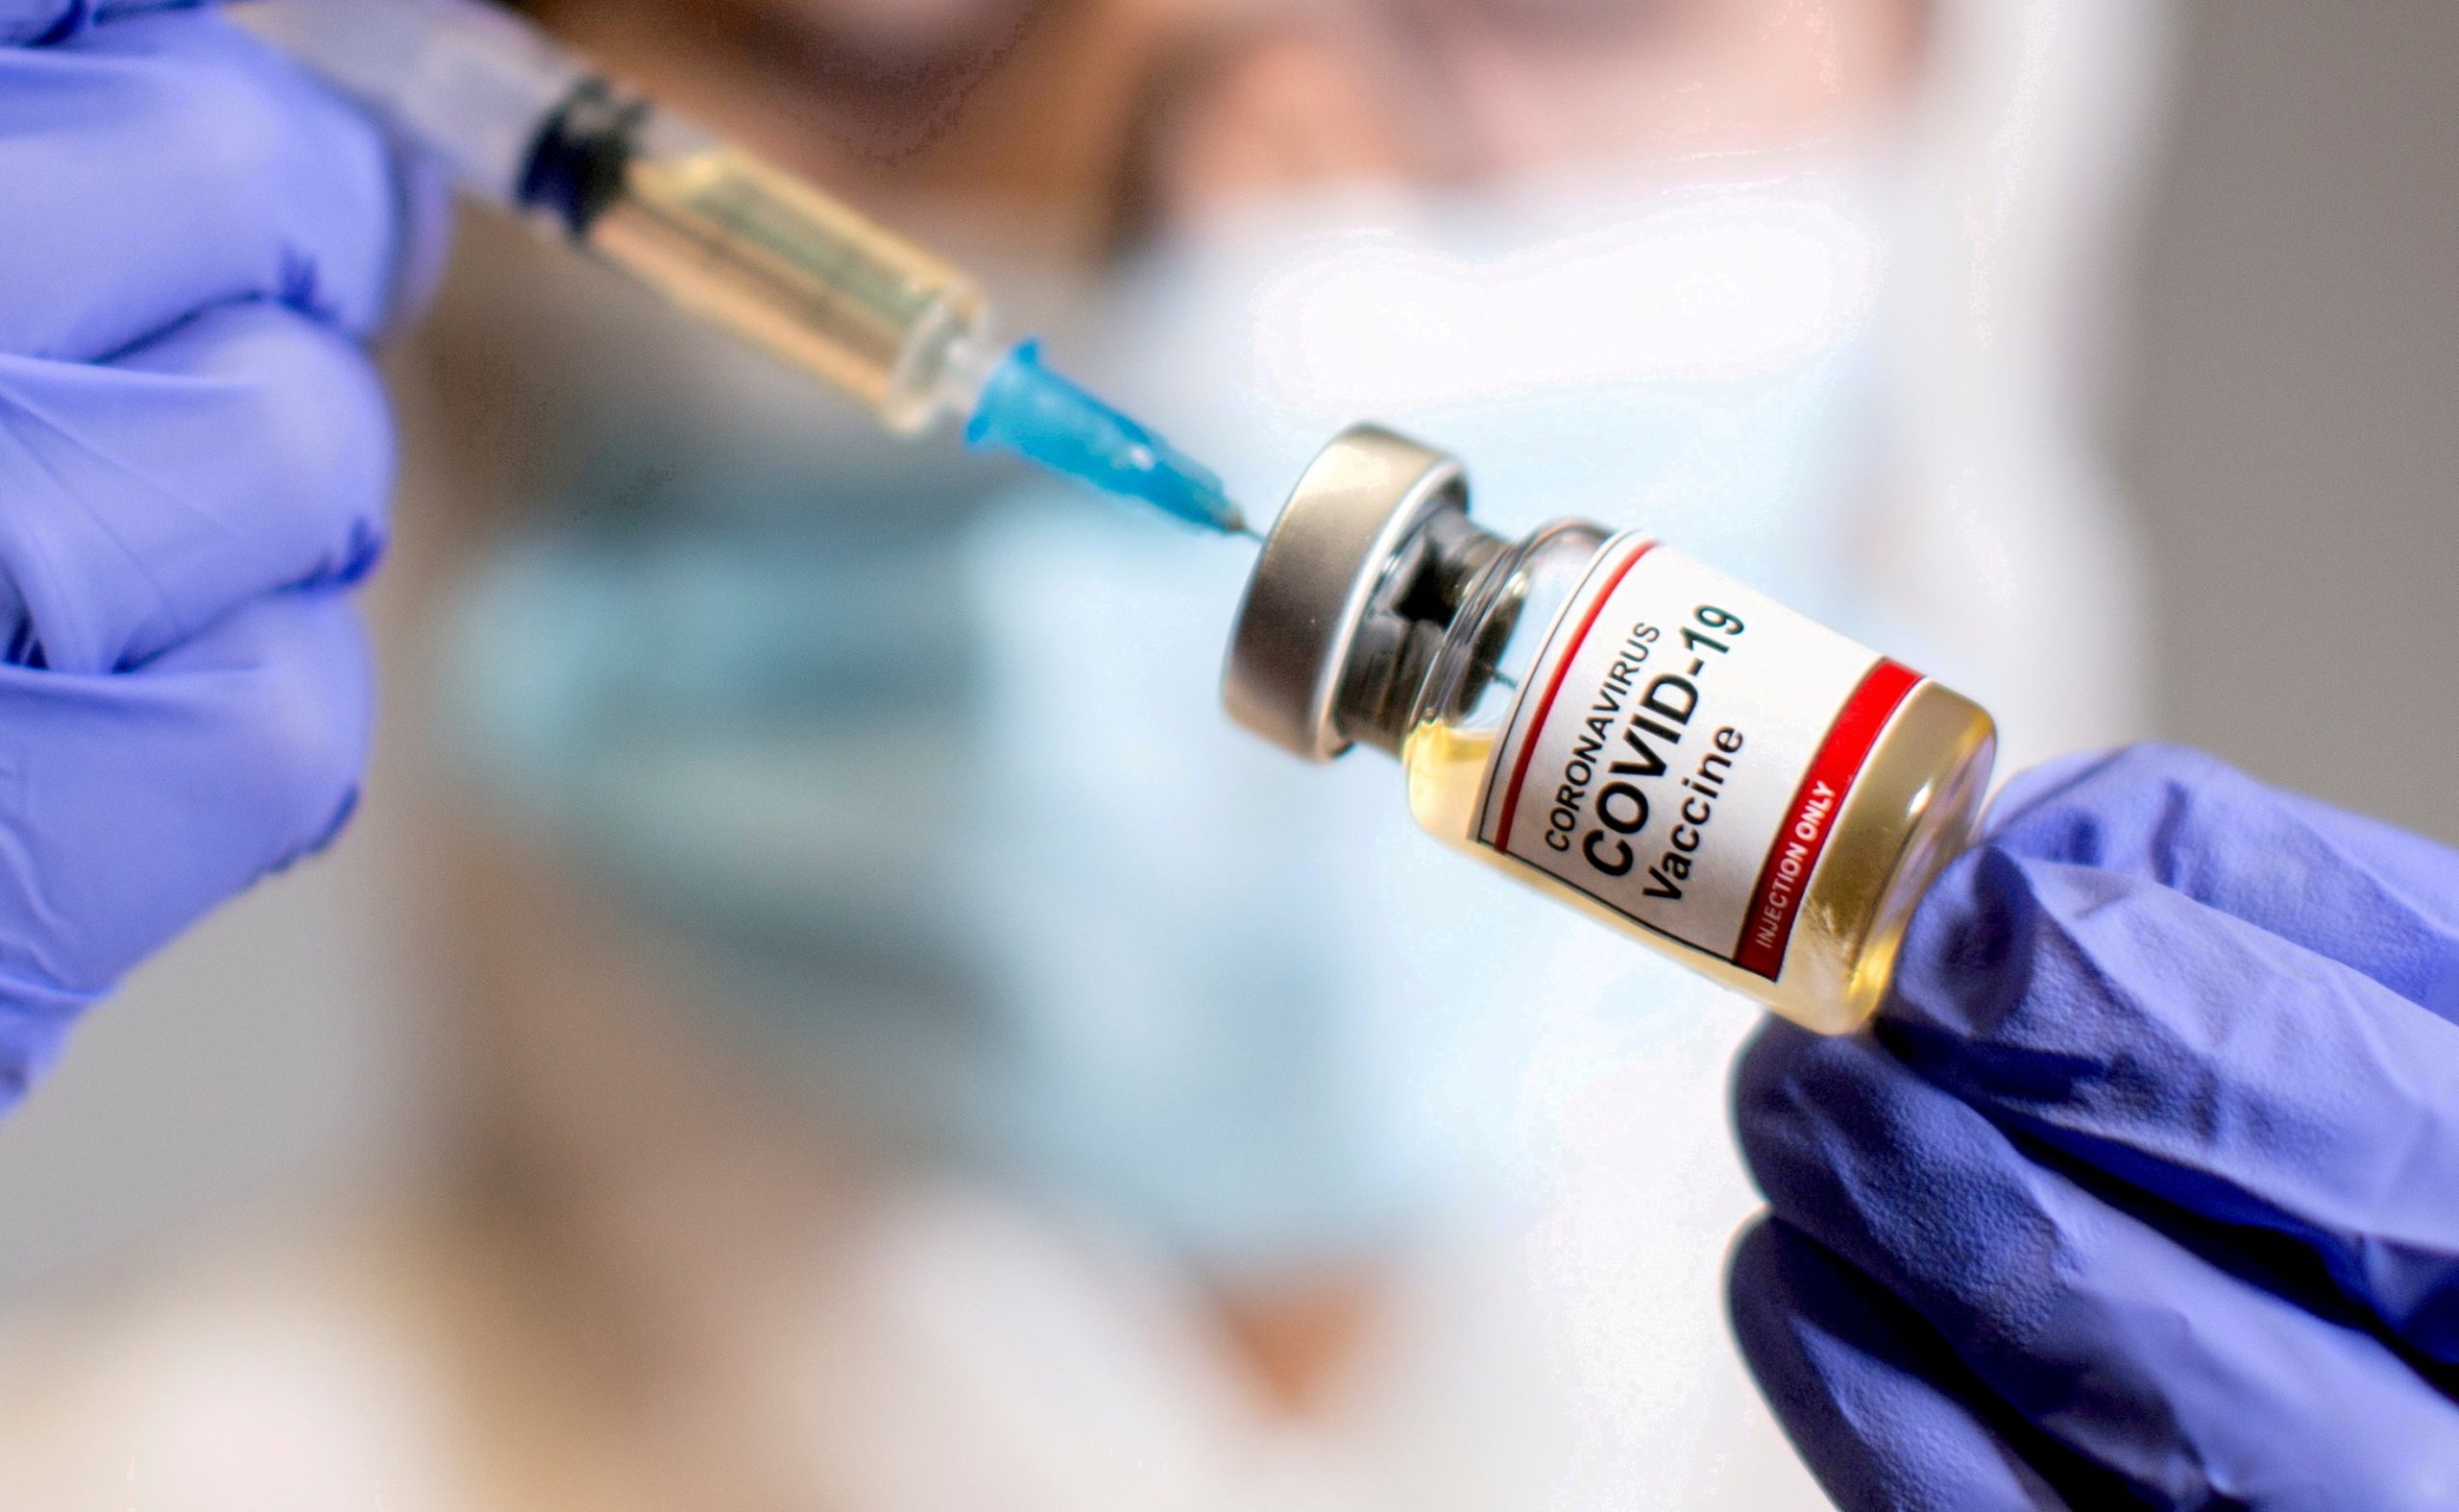  Un bărbat s-a vaccinat de 9 ori anti-Covid ca să facă rost de bani